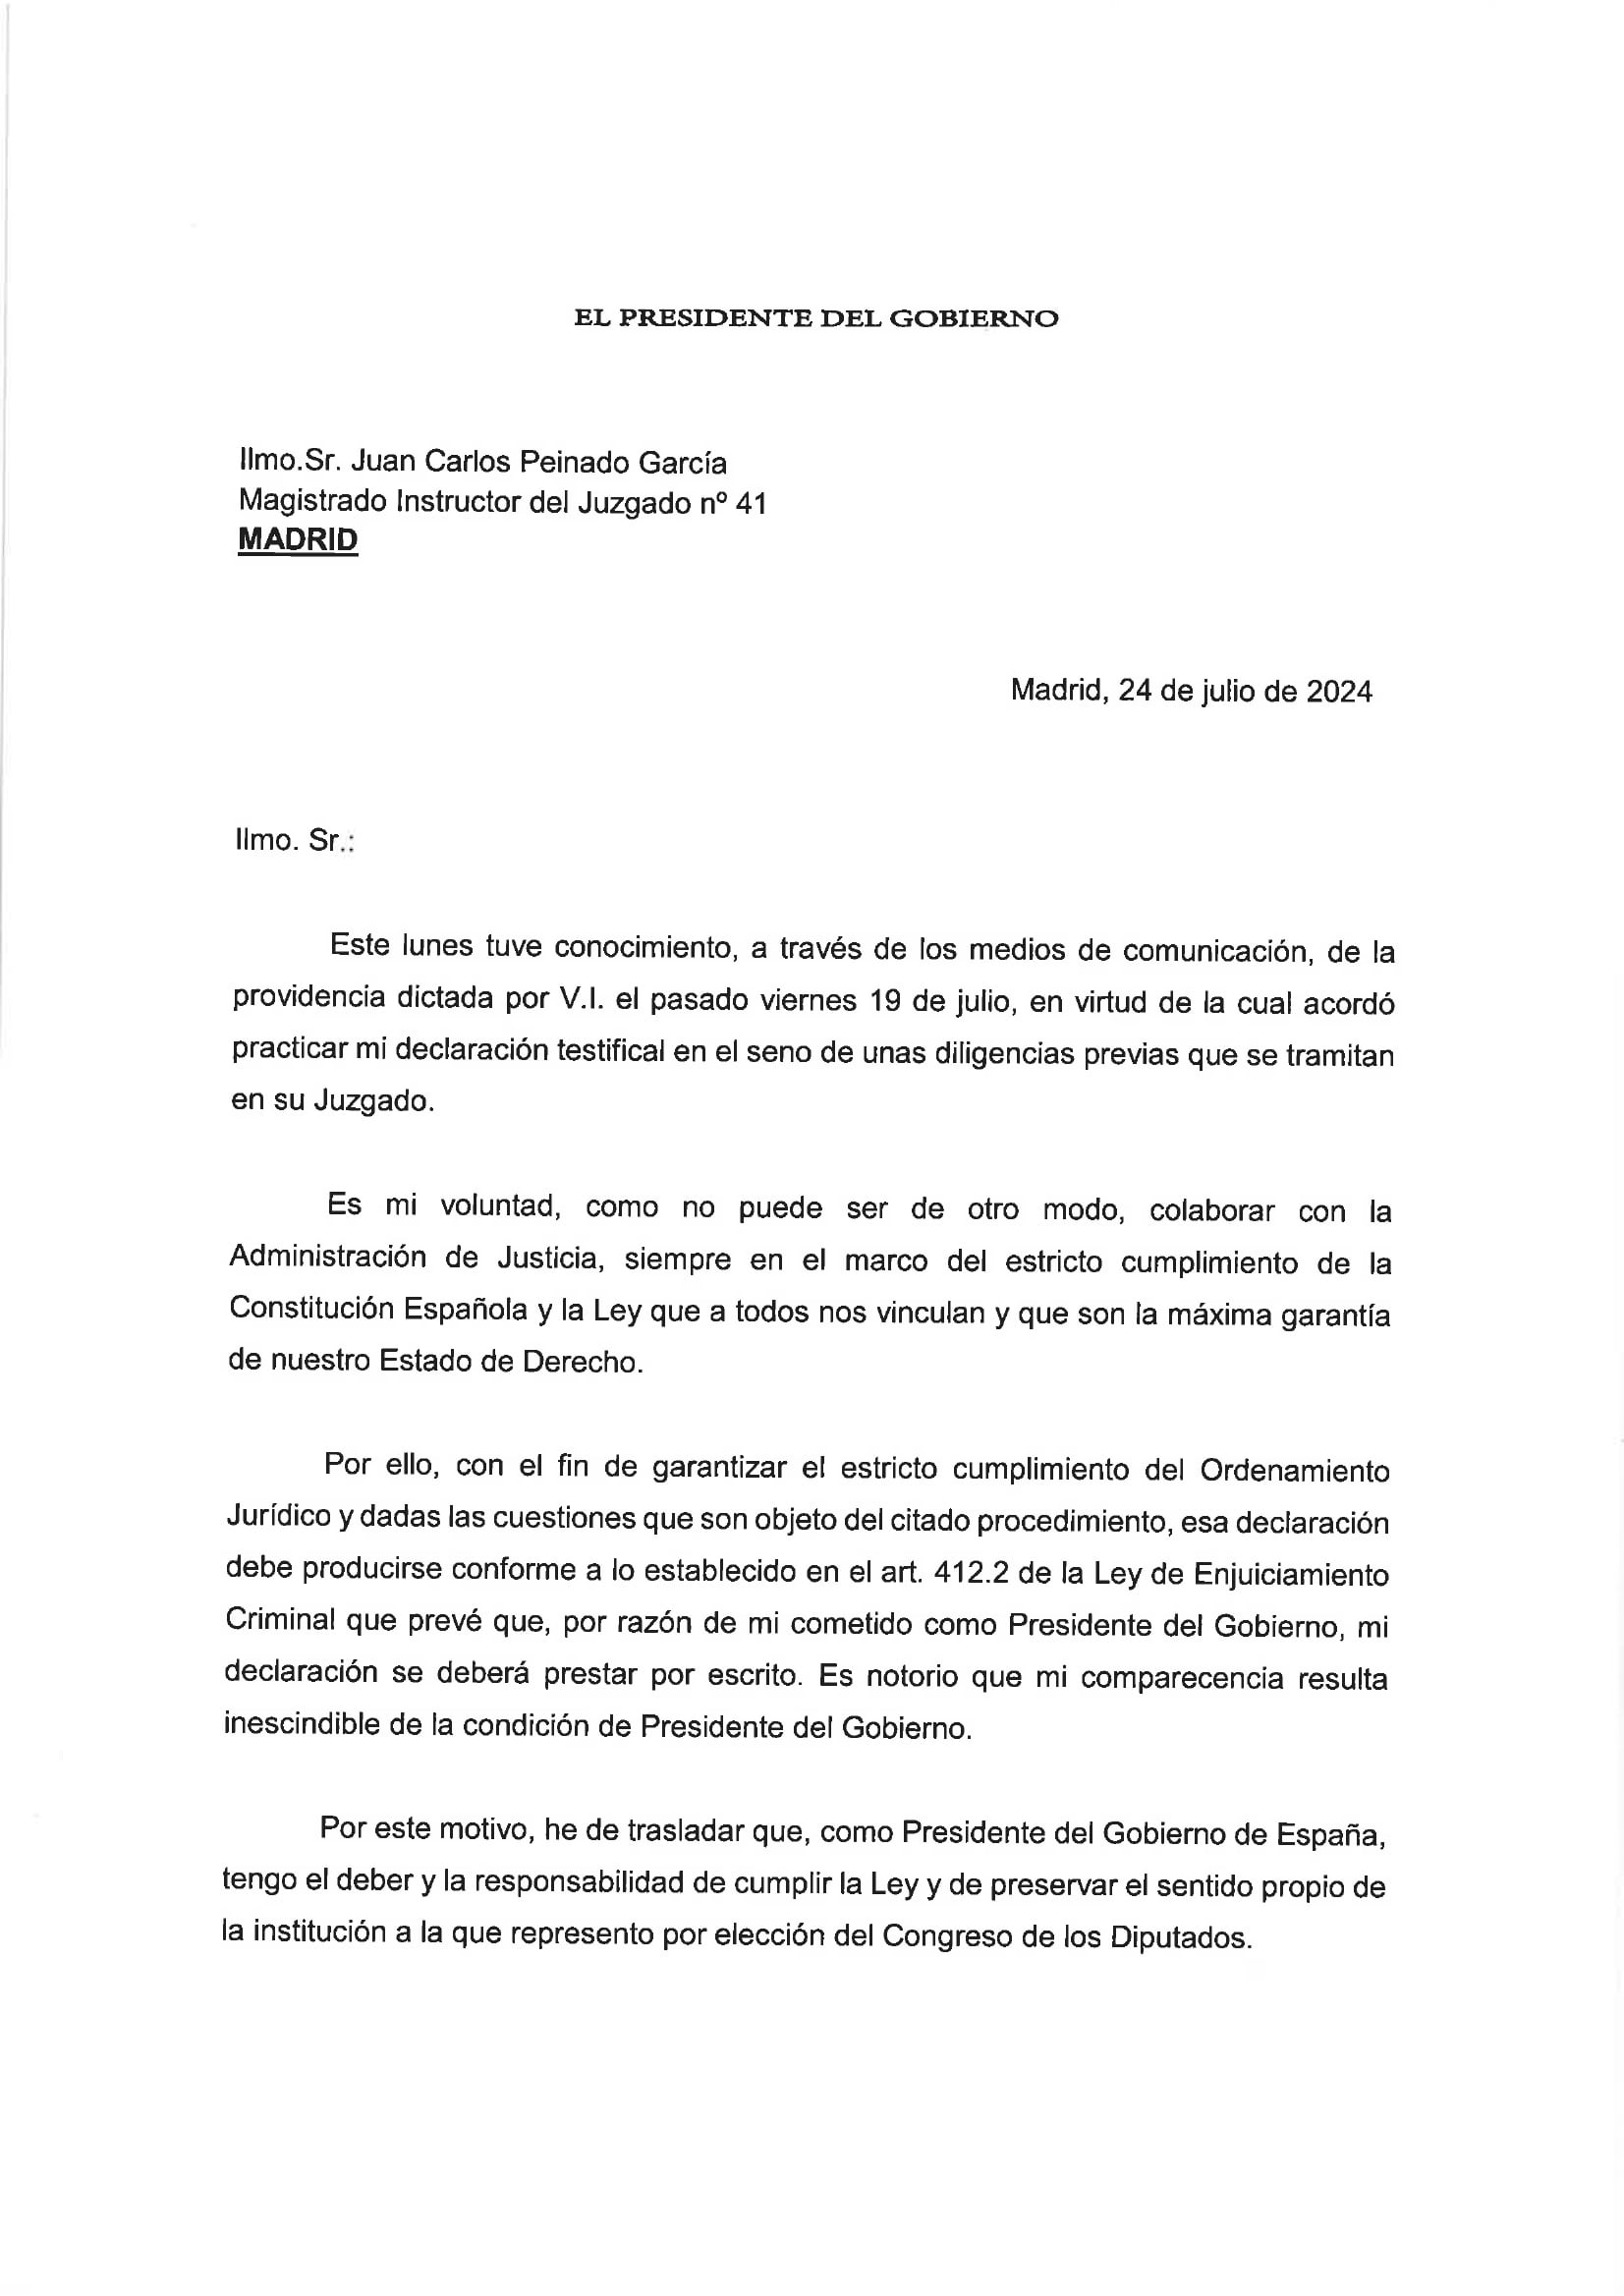 Pedro Sánchez recuerda al juez Peinado que tiene derecho a declarar por escrito